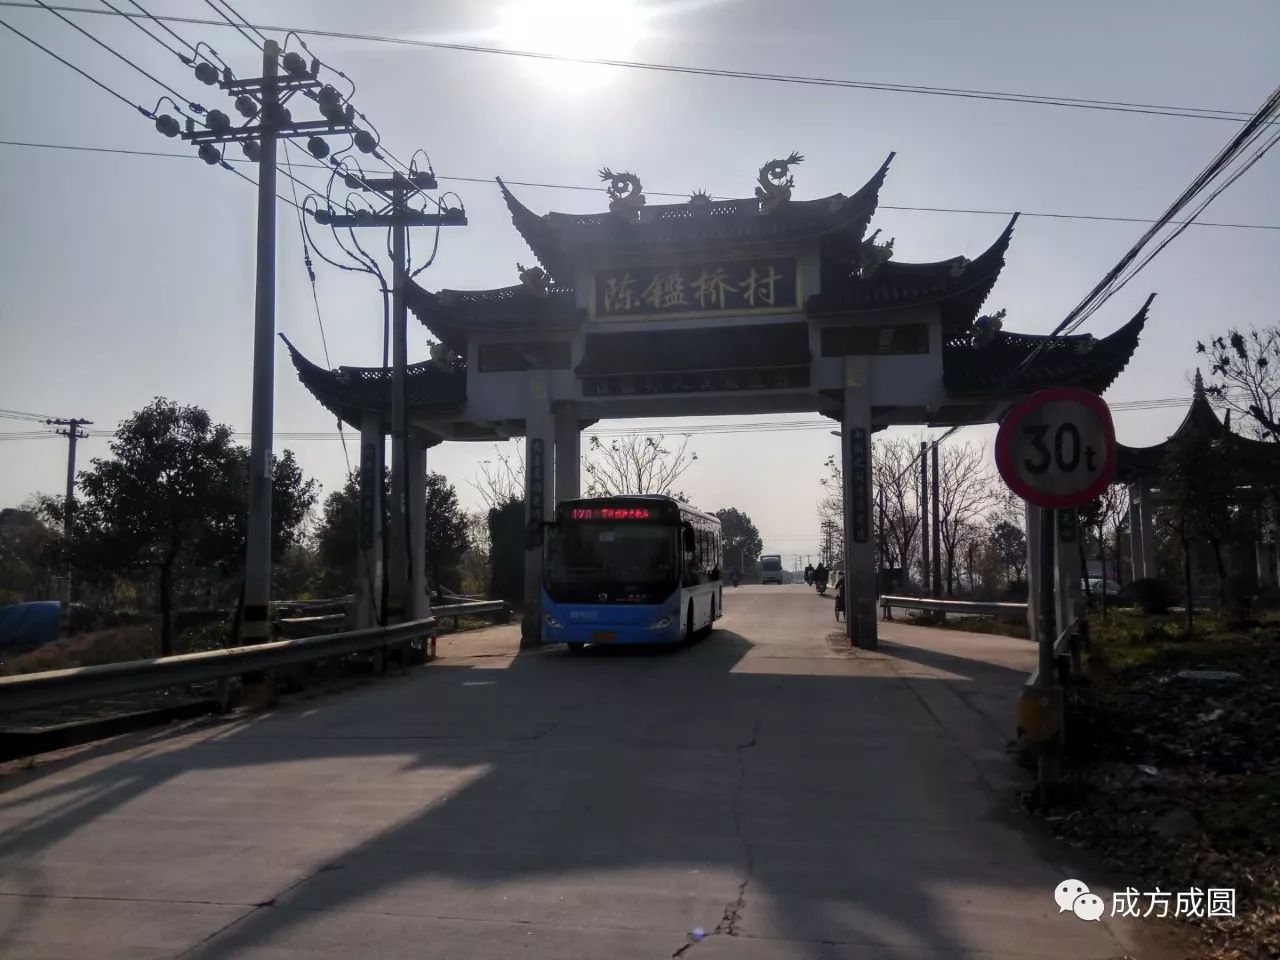 陈鉴桥村位于宁波的鄞州区姜山镇东南部,距宁波市区南14公里处,是